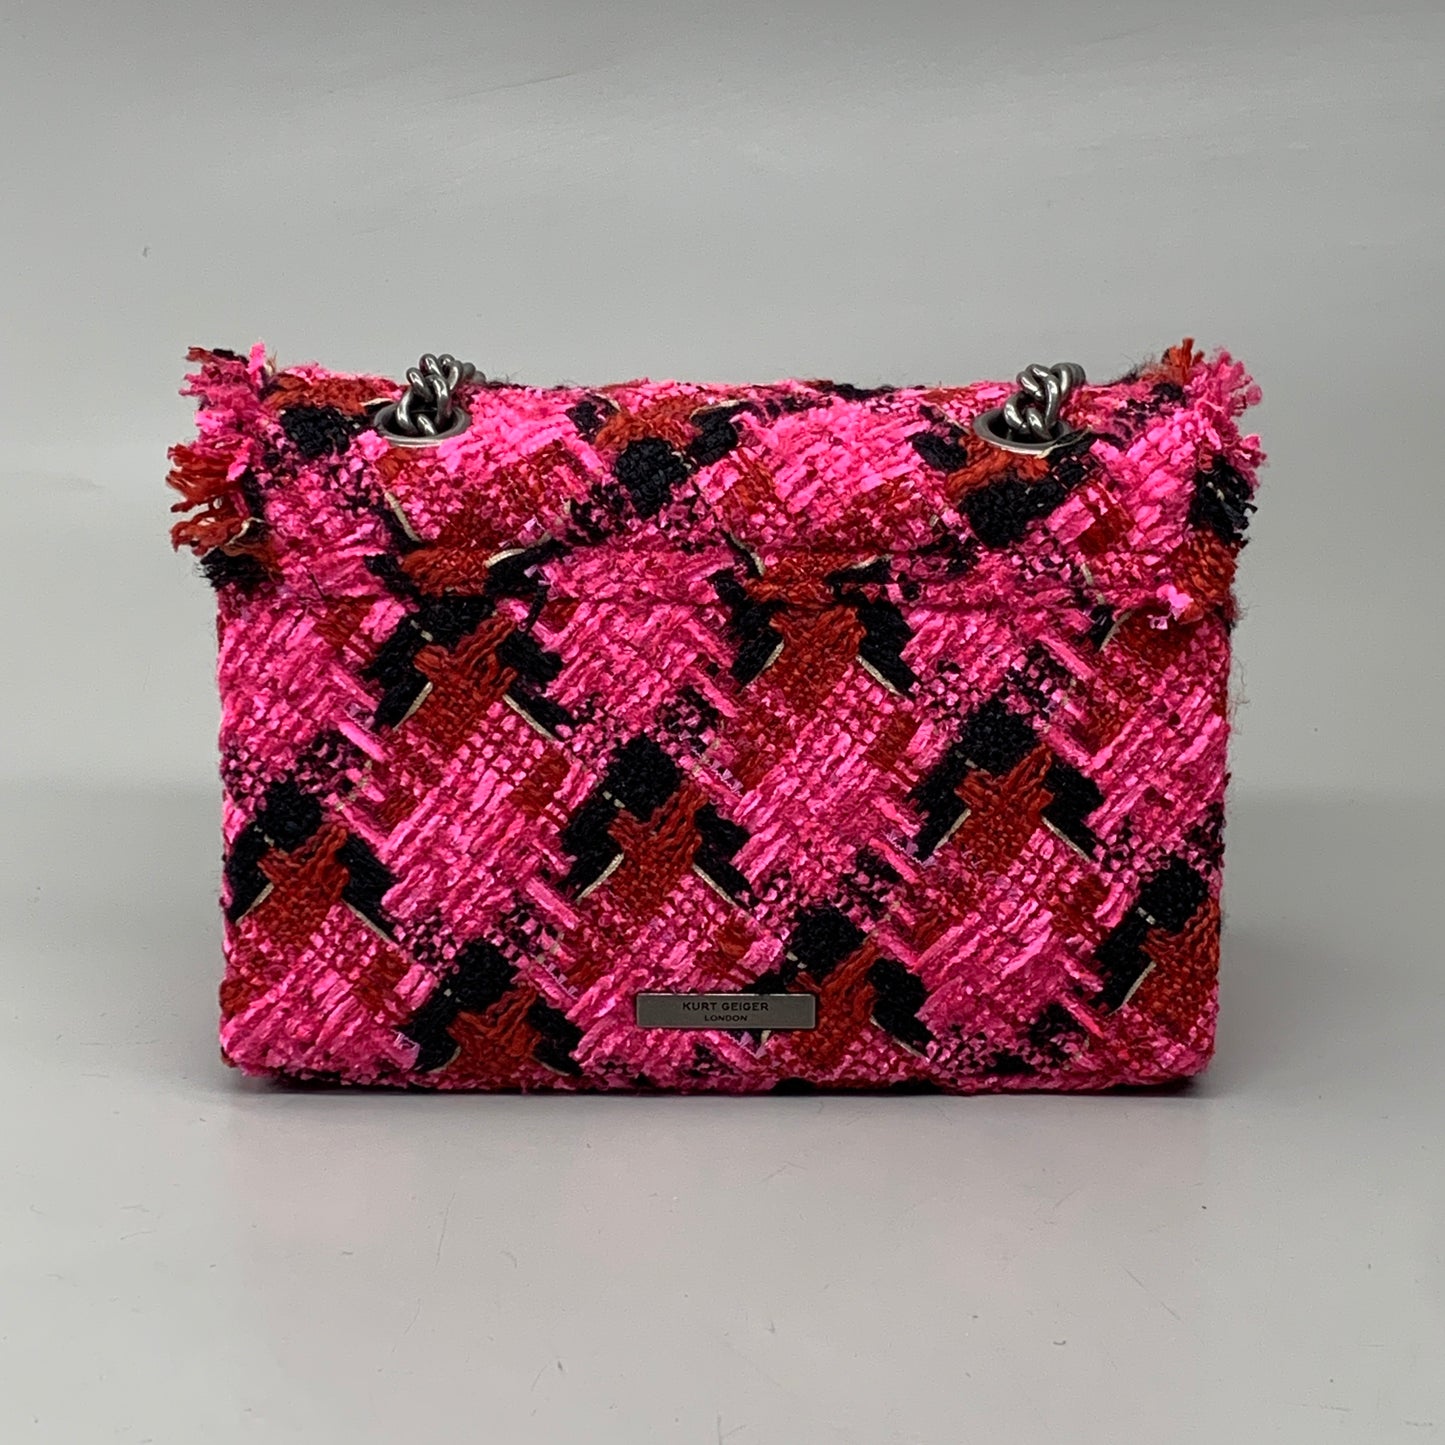 KURT GEIGER Tweed Kensington Fabric Day Bag 10.5" x 8.5" Pink 3614598609 New